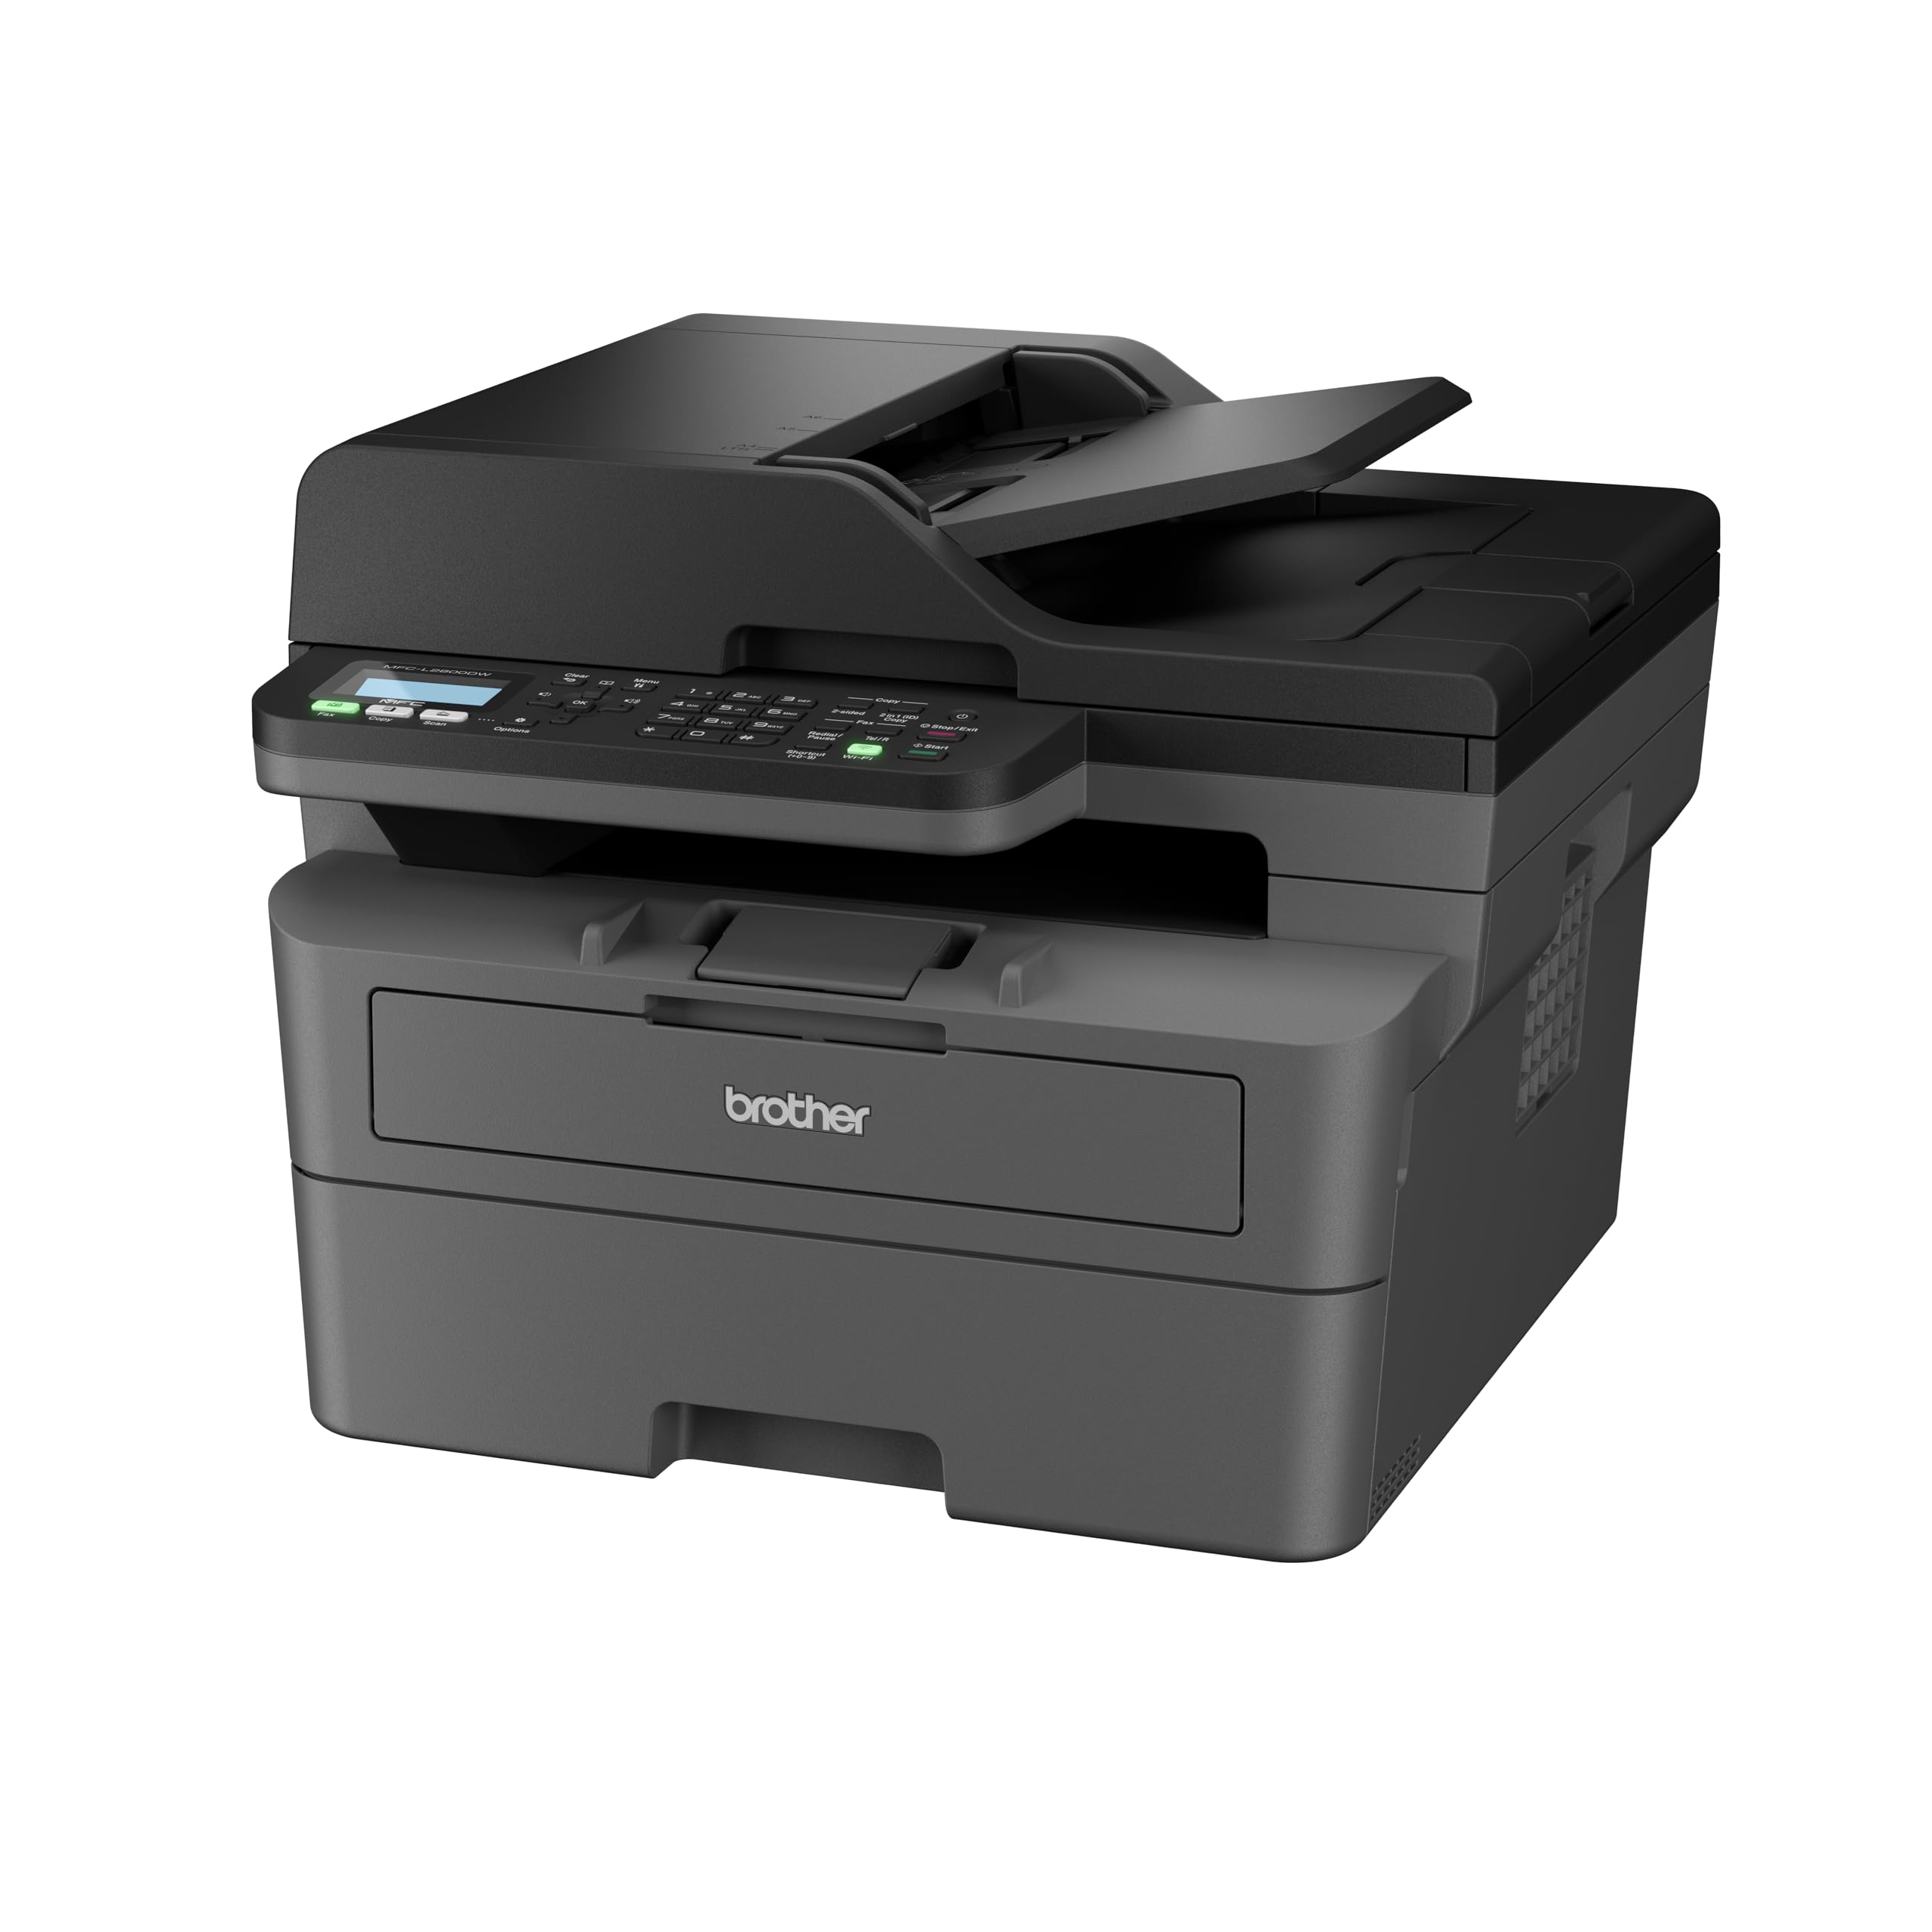 Brother MFCL2800DW Impresora multifunción láser monocromo WiFi con fax, impresión automática a Doble Cara y ADF de 50 Hojas